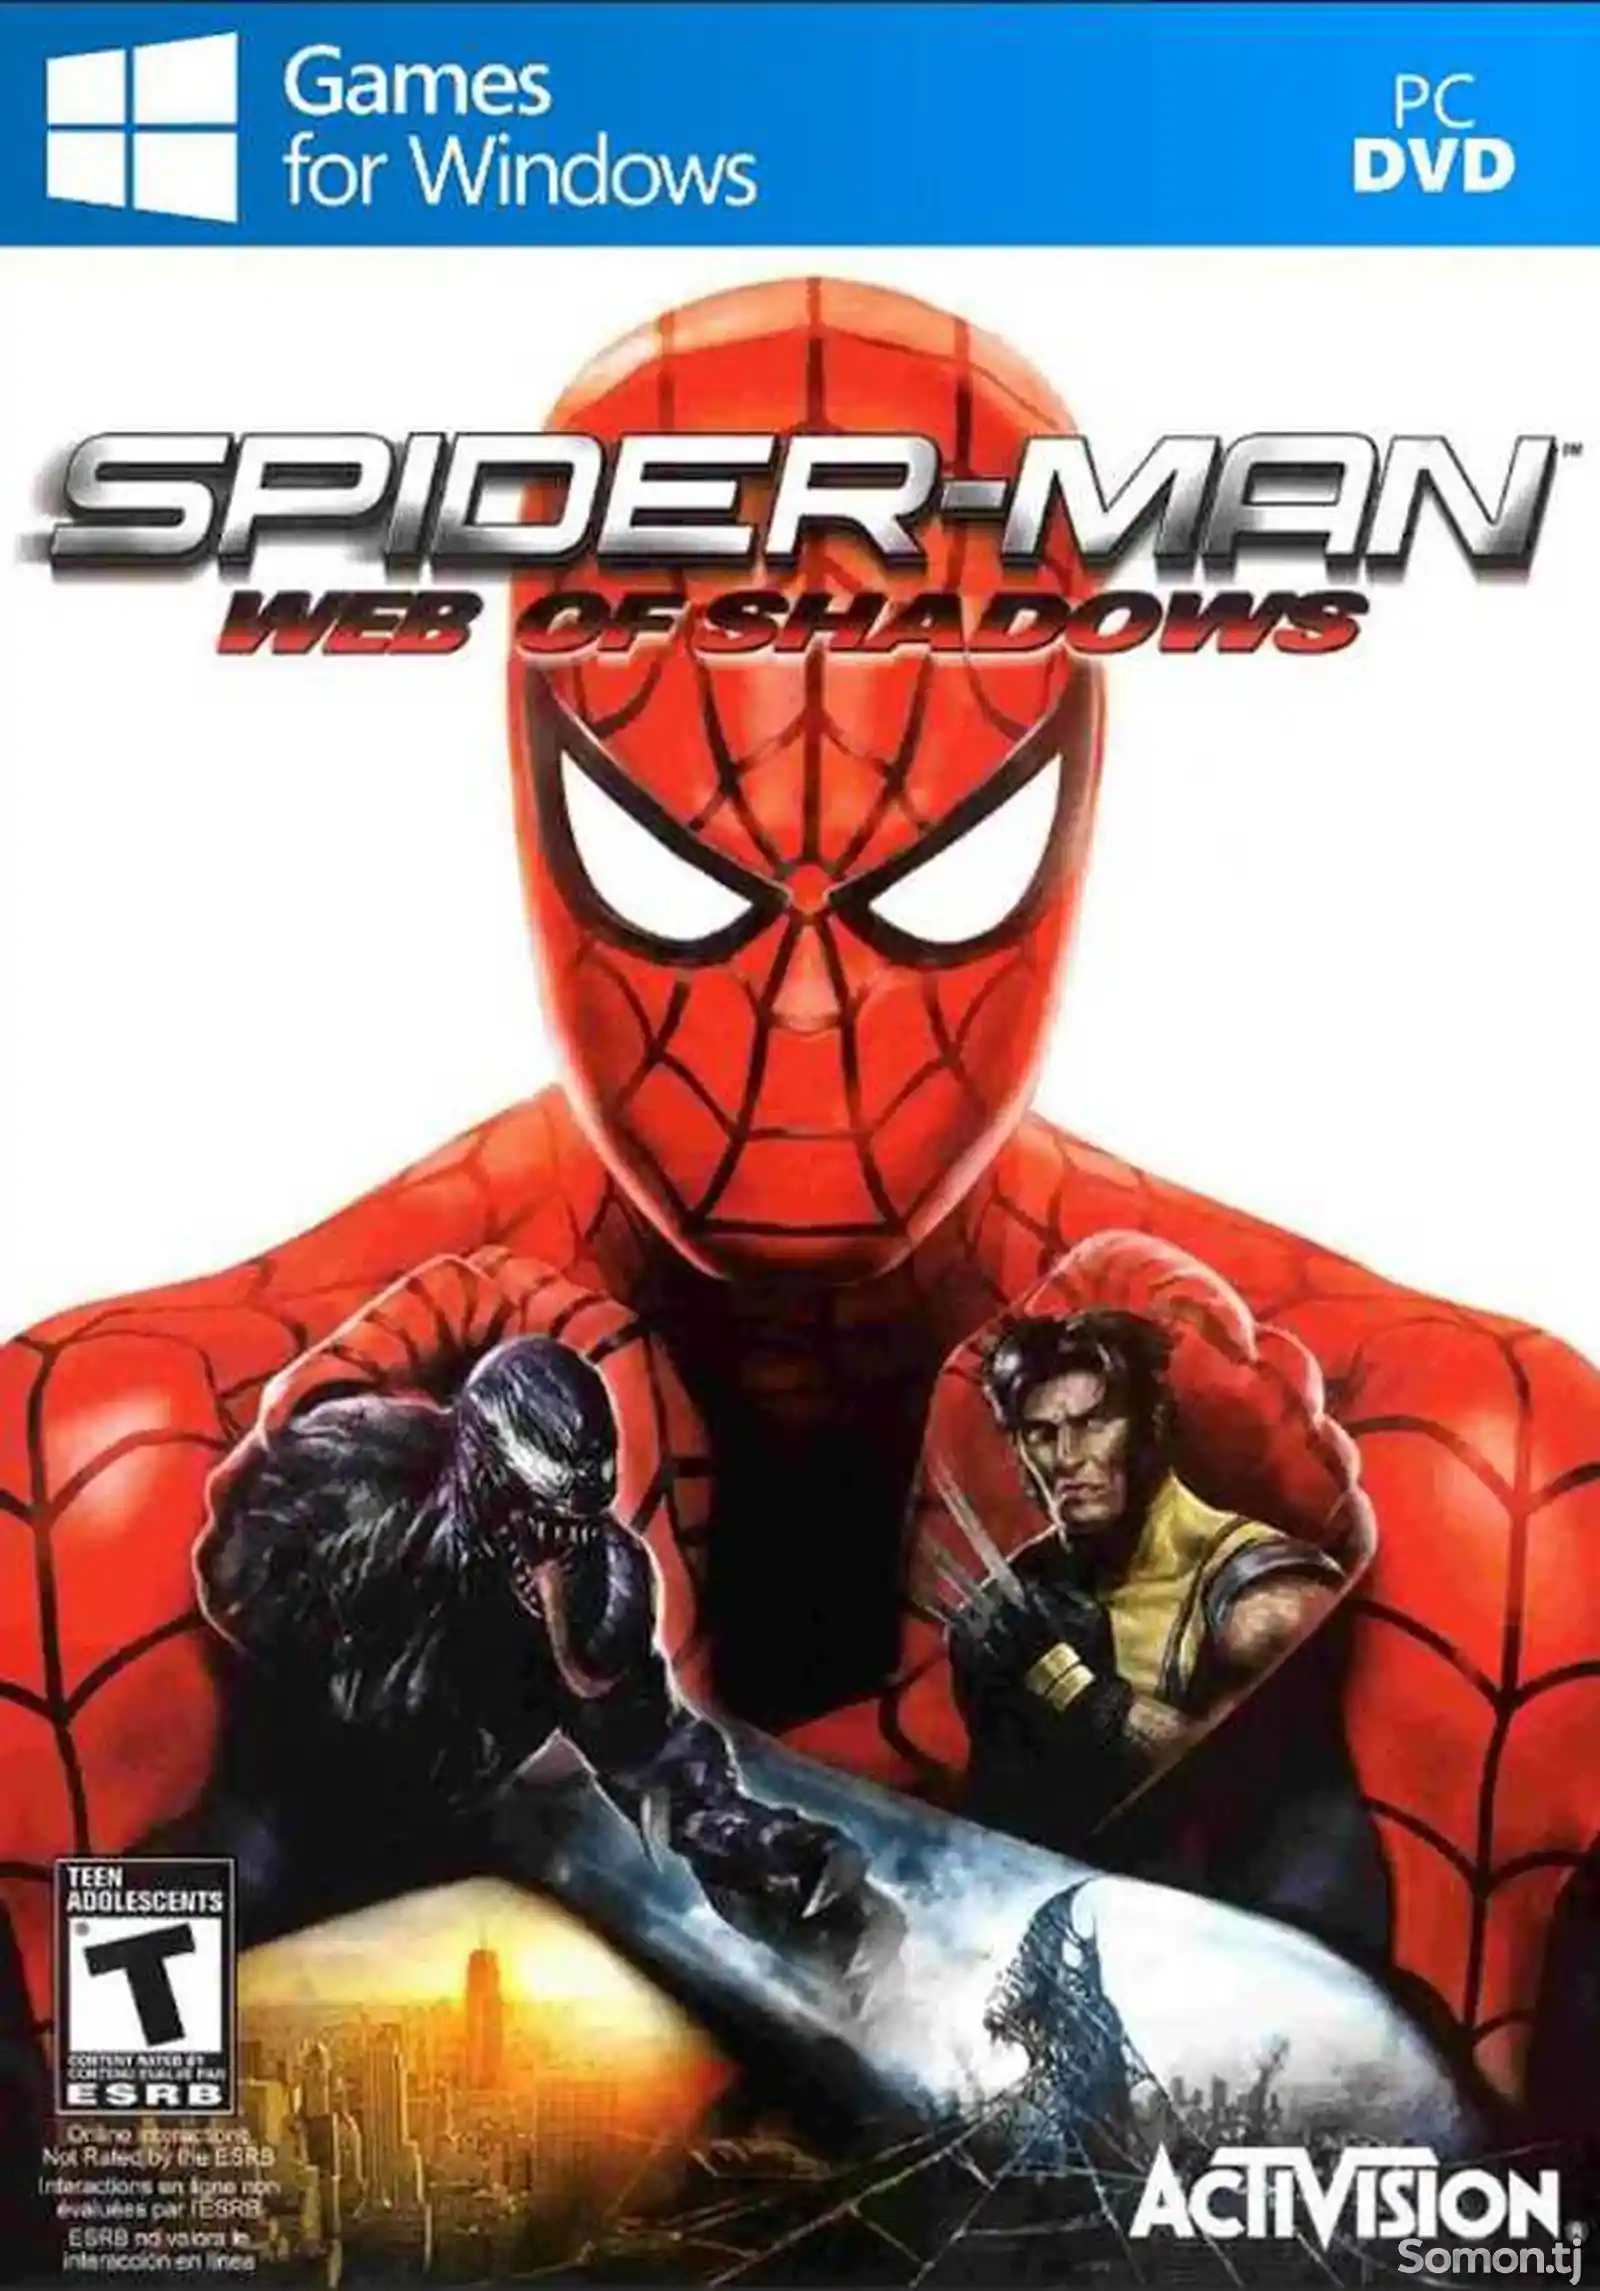 Игра Spider man web of shadows 2008 для компьютера-пк-pc-1